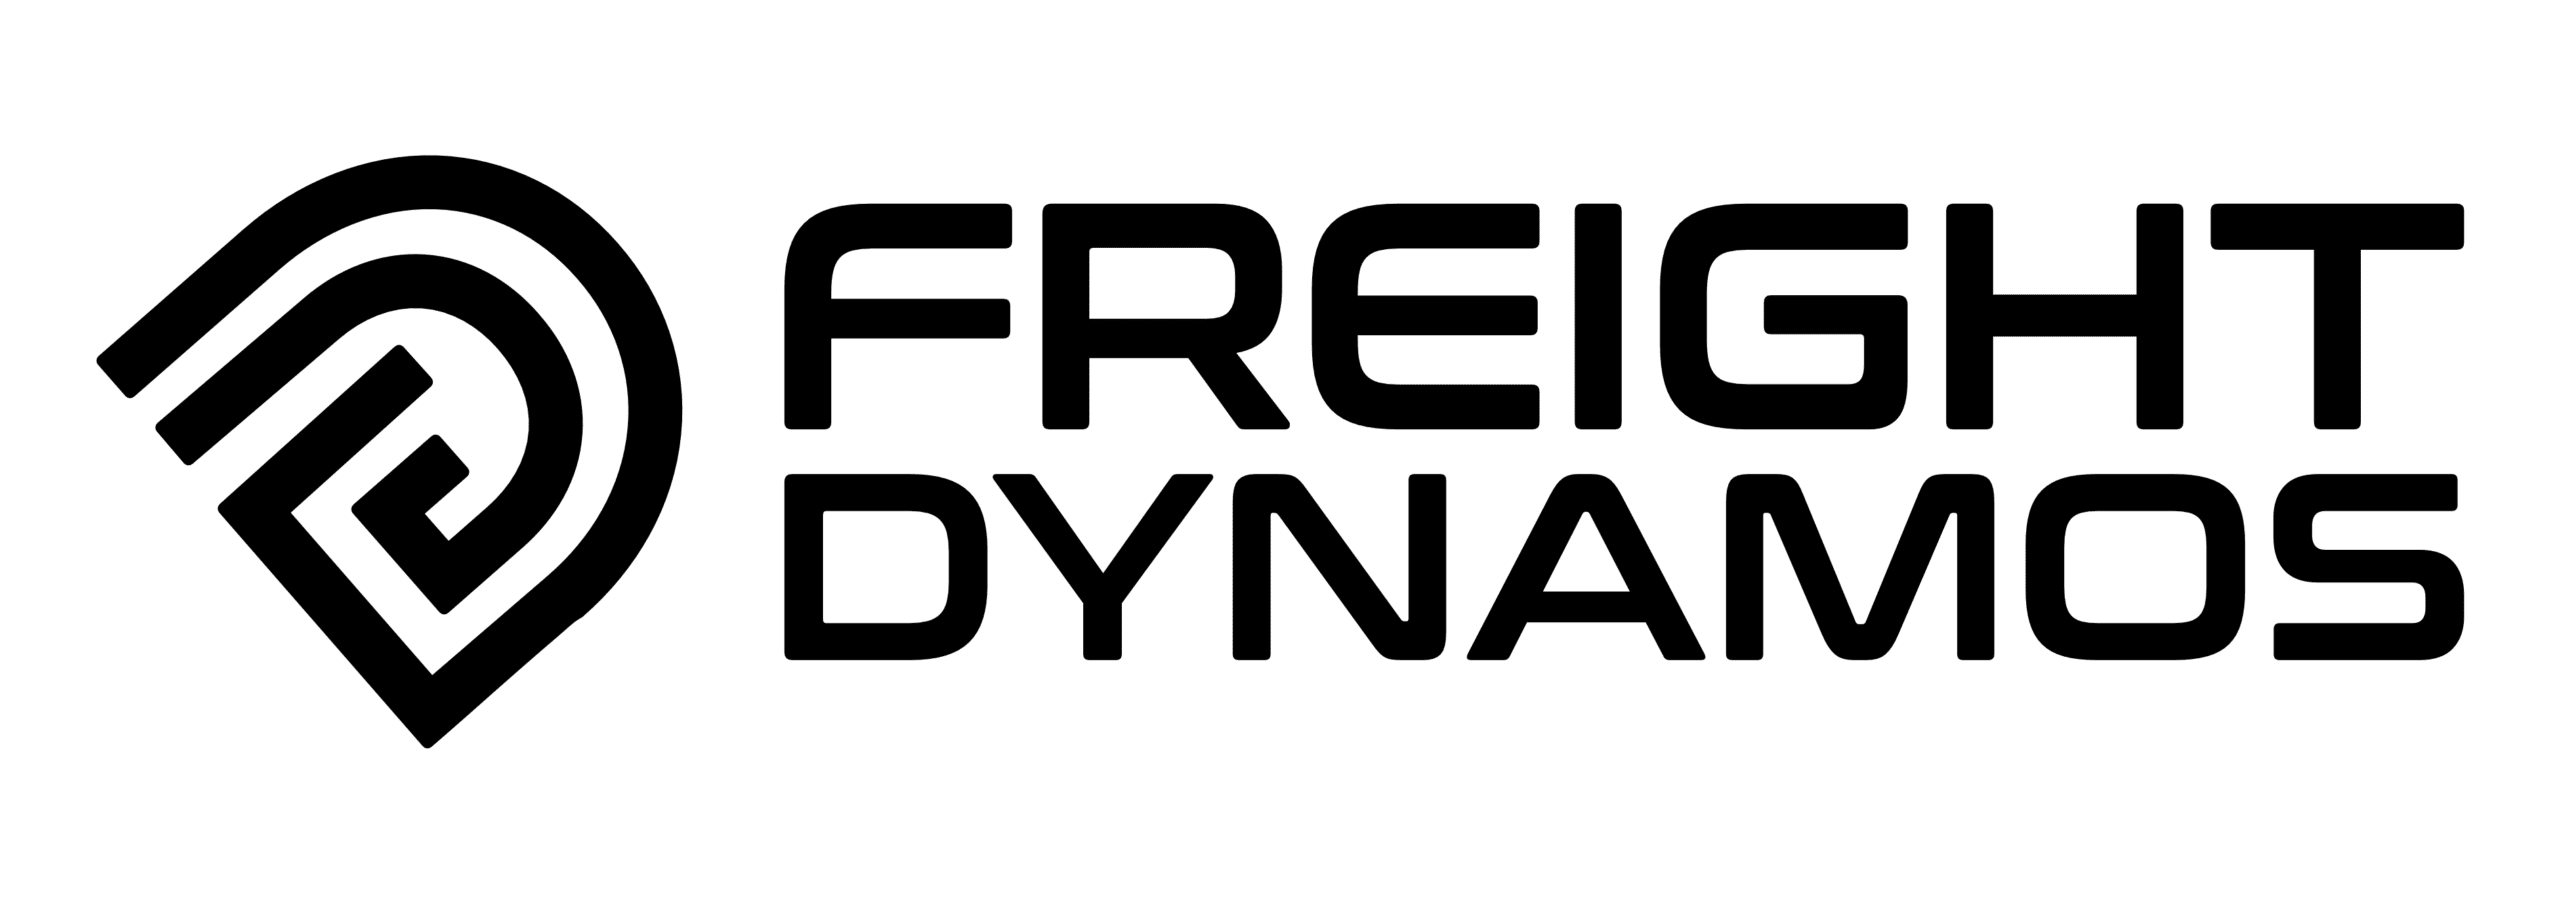 Freight Dynamos